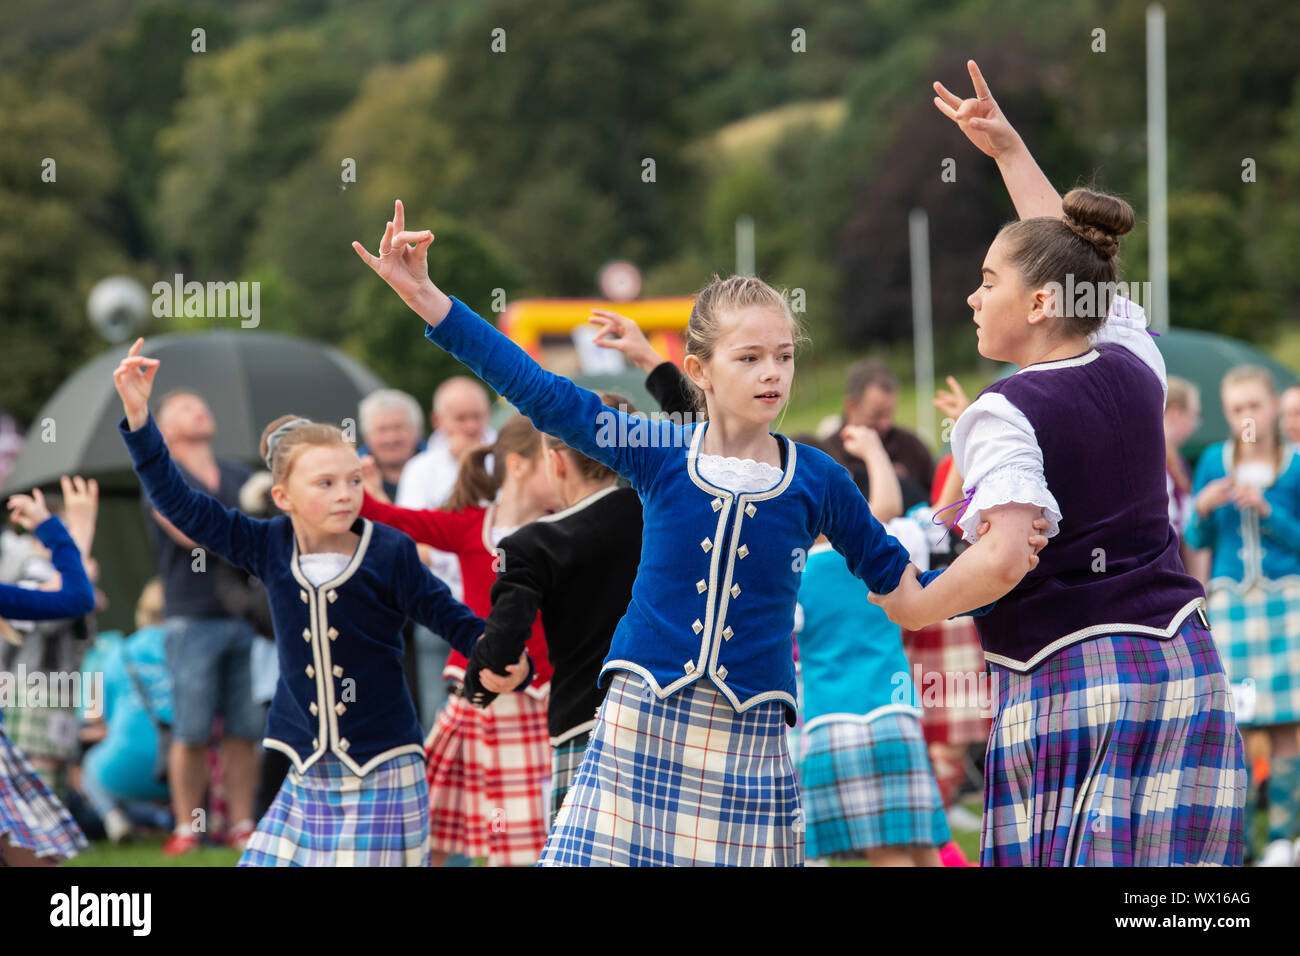 Les jeunes filles à la danse Peebles Highland Games. Peebles, Scottish Borders, Scotland Banque D'Images